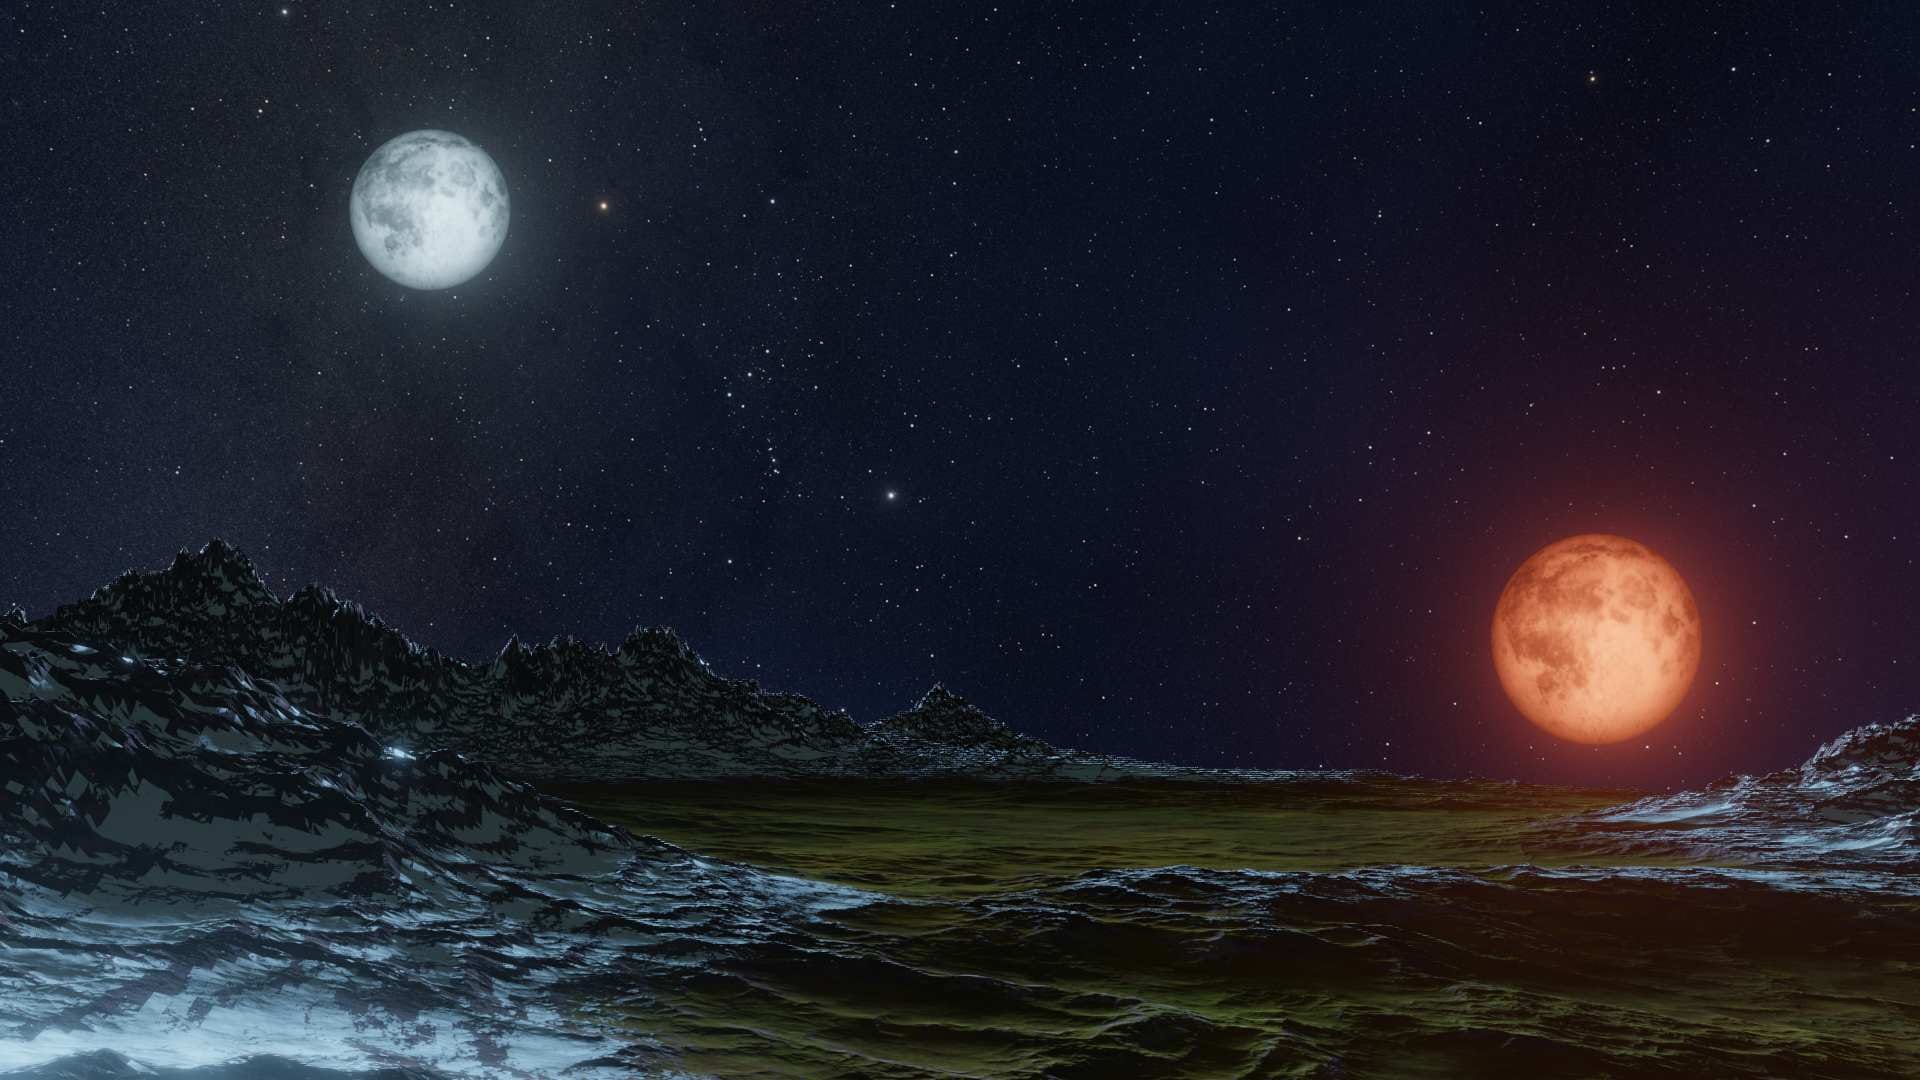 De maanillusie: waarom lijkt de maan zo groot?